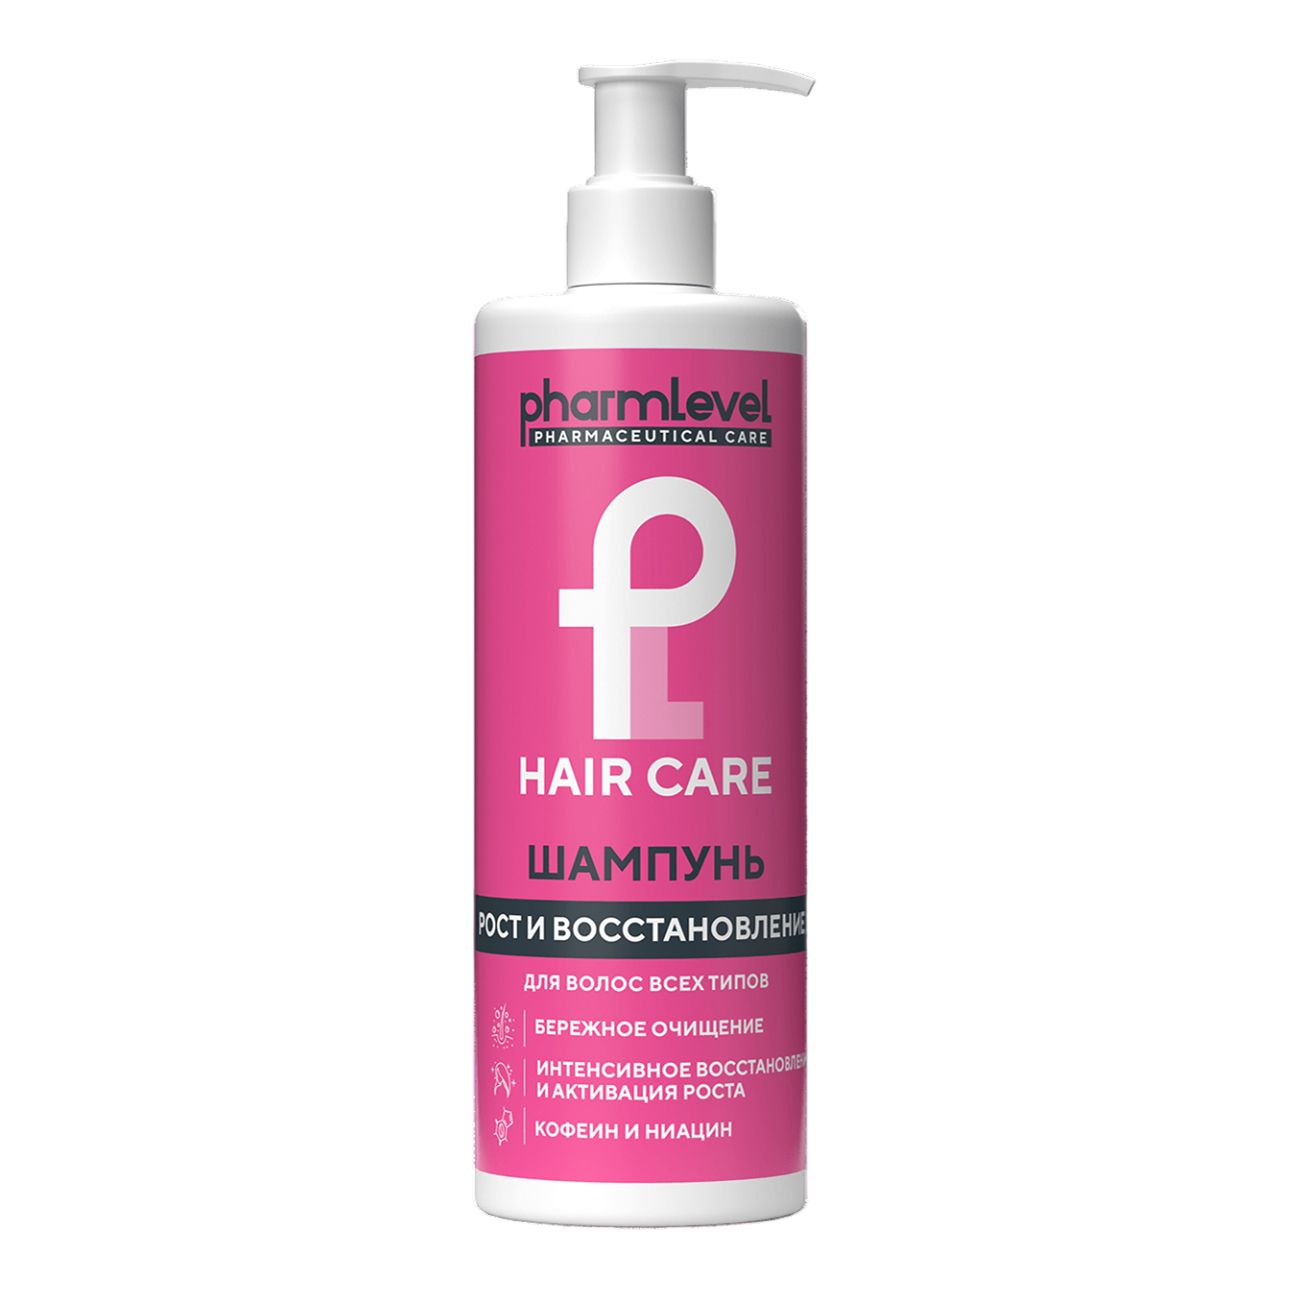 Шампунь Pharmlevel Hair Care для роста и восстановления всех типов волос 400 мл